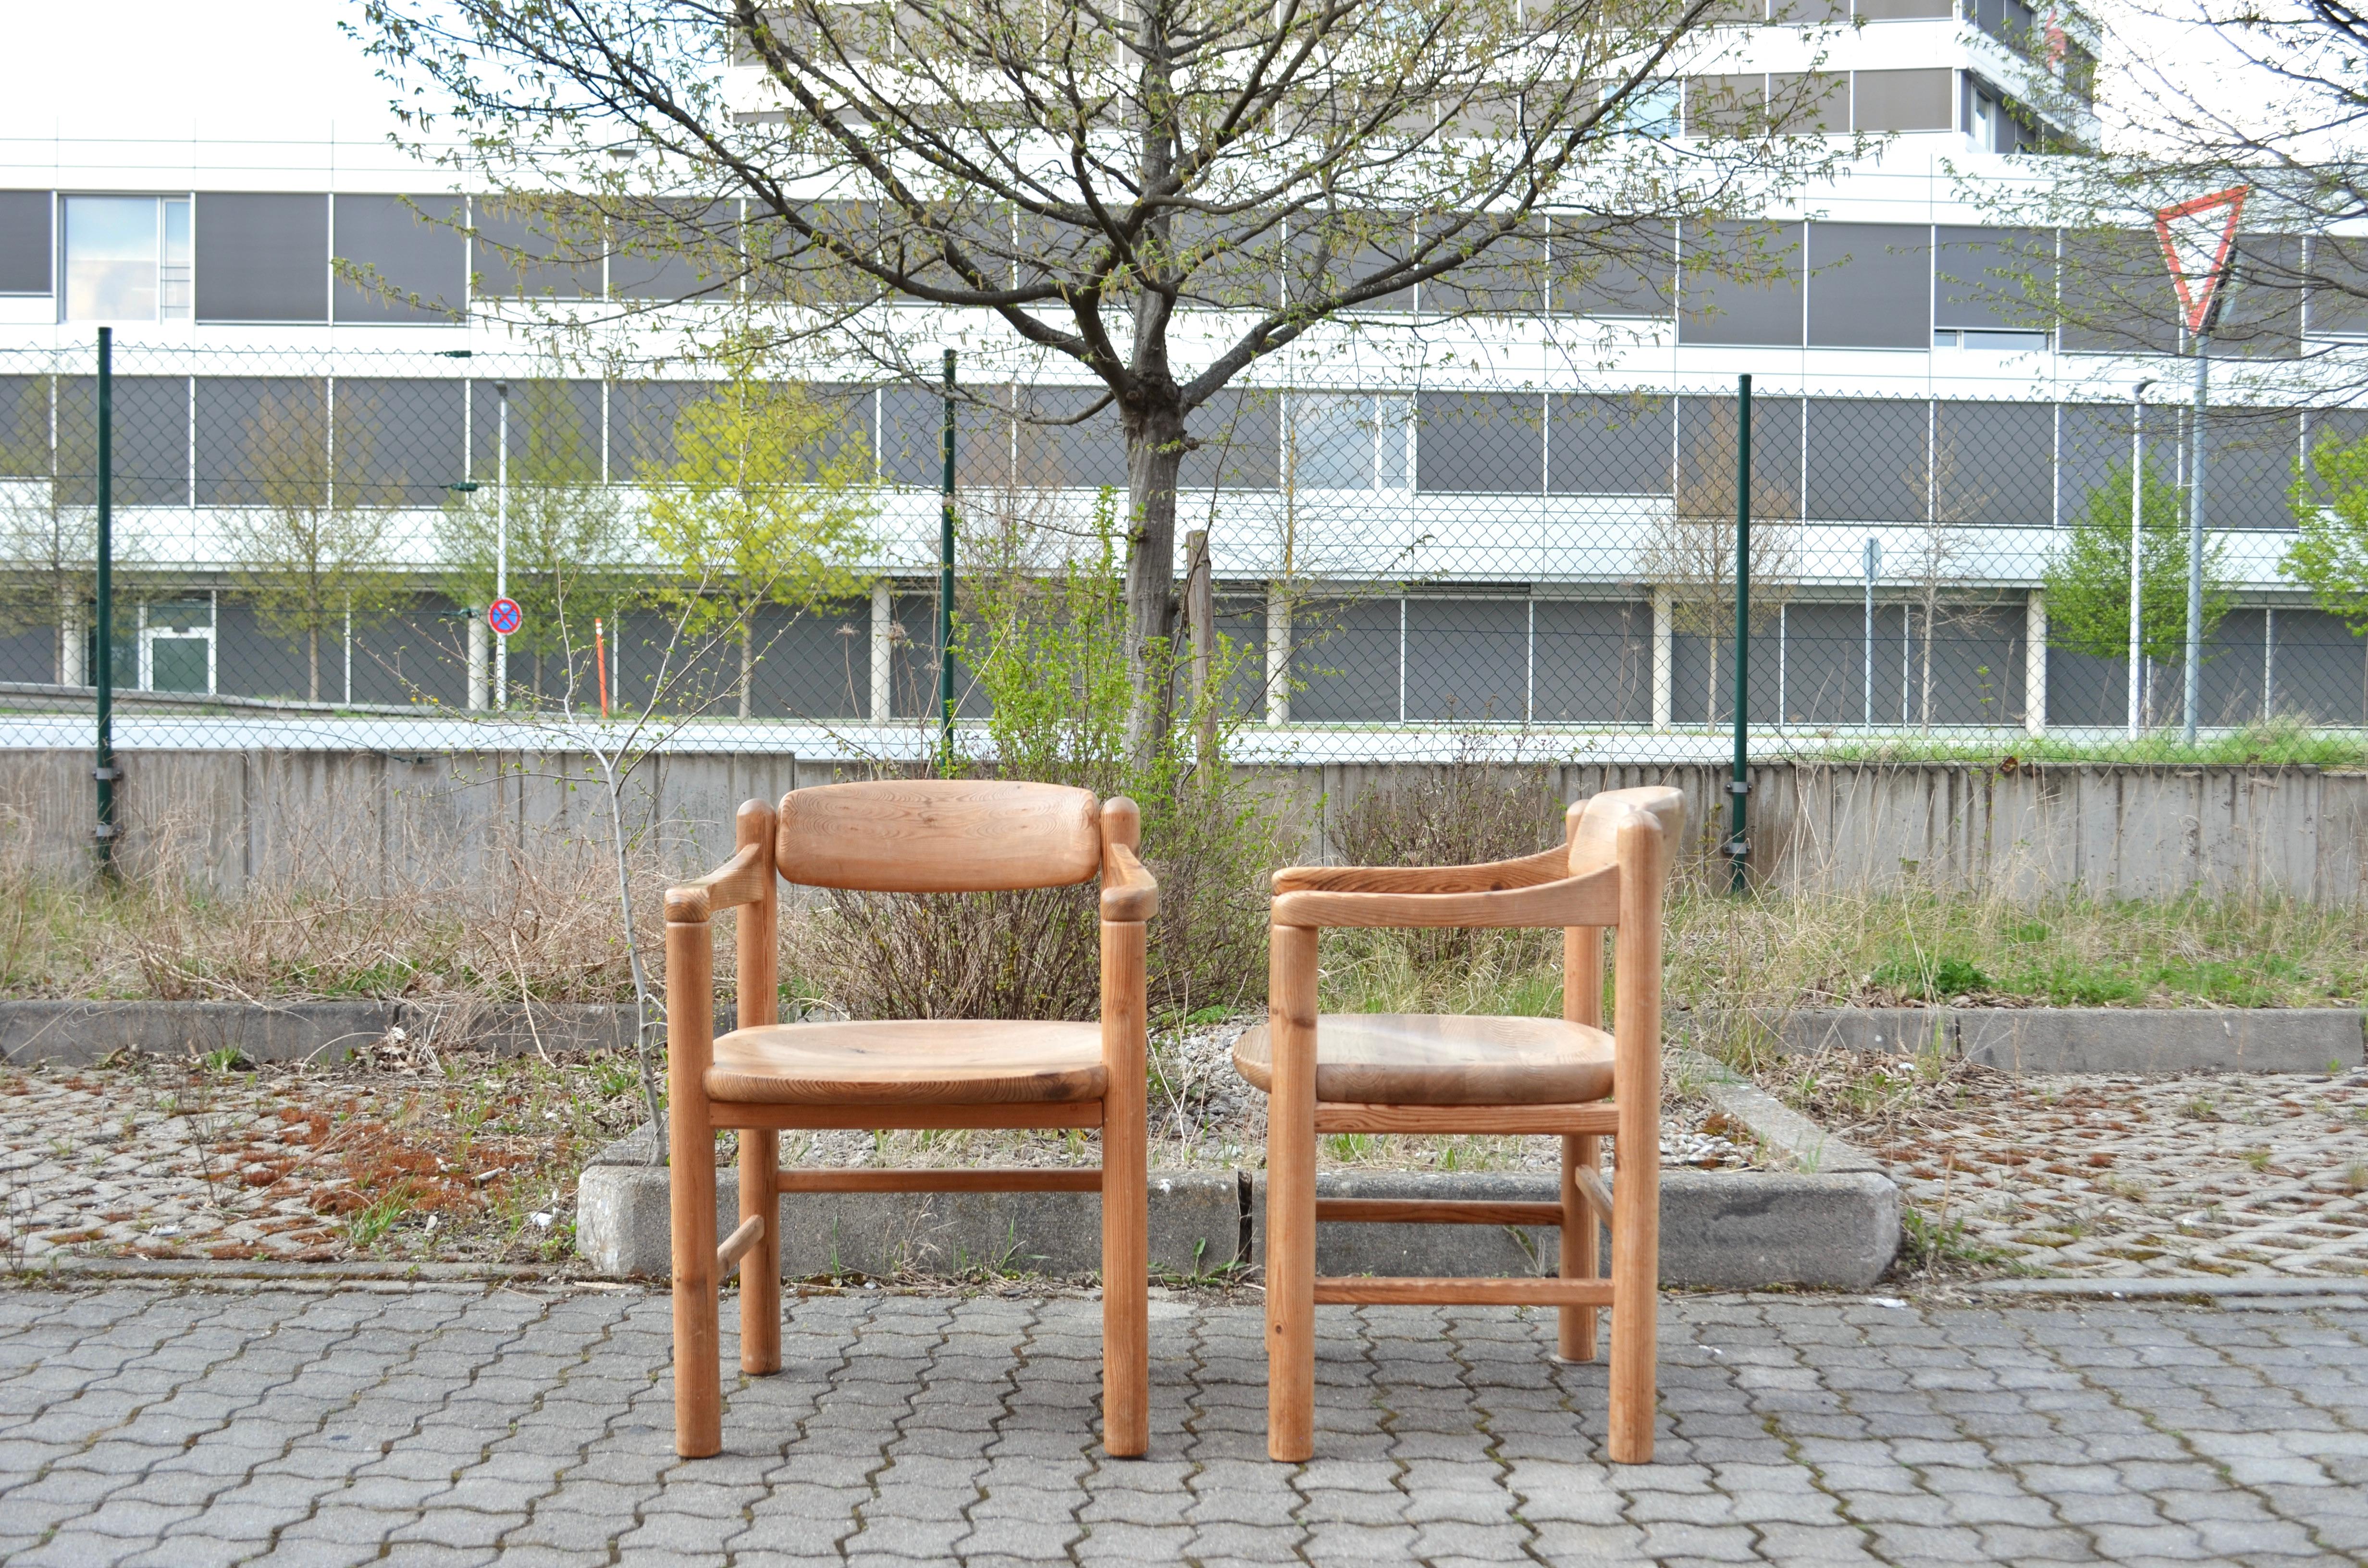 Esszimmerstühle, entworfen von Rainer Daumiller und hergestellt von Hirtshals Savvaerk.
Seltenes Modell mit leicht gebogenen Armlehnen.
Massives skandinavisches Kiefernholz, das schön patiniert ist.
Diese Stühle sind sehr bequem.
Die Sitzfläche